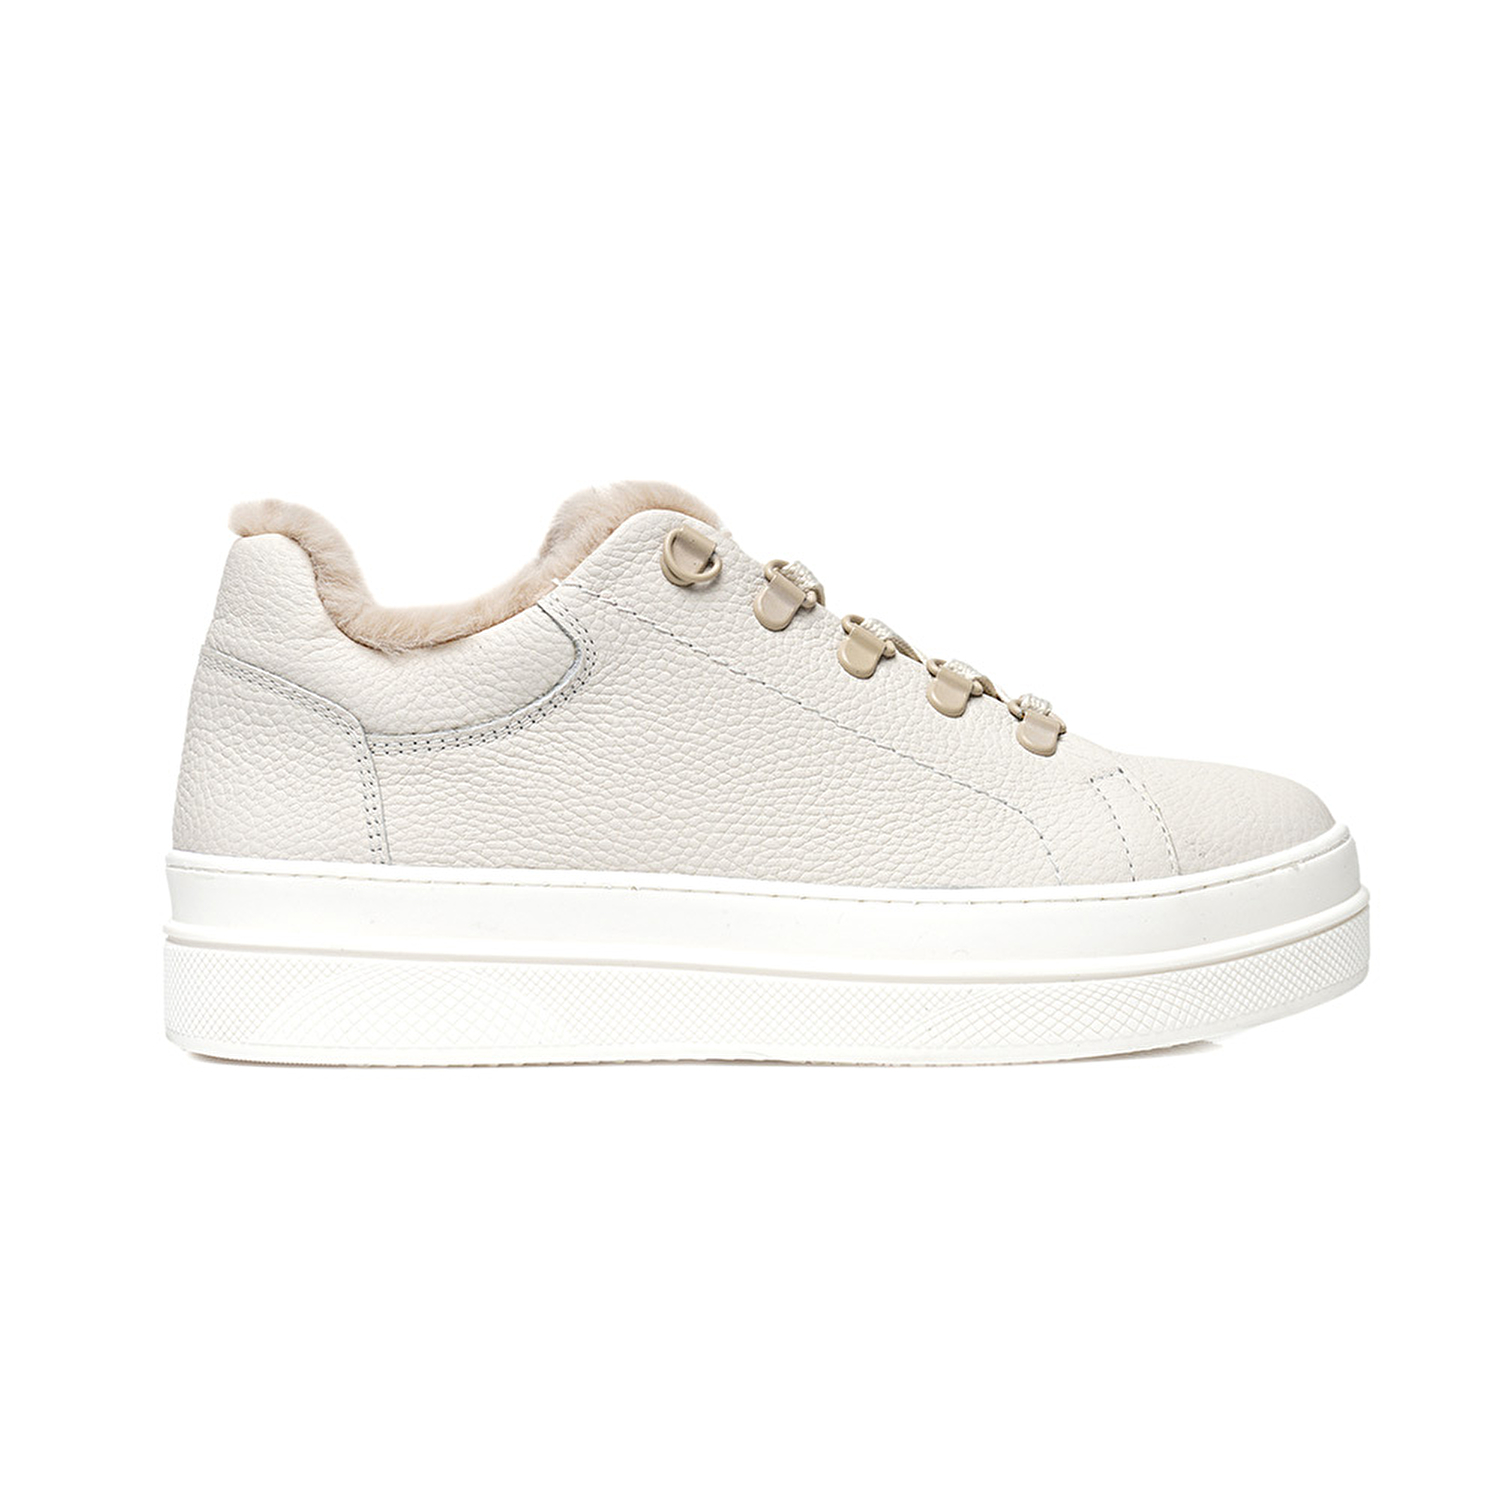 Kadın Kirli Beyaz Hakiki Deri Sneaker Ayakkabı 3K2SA33070-1